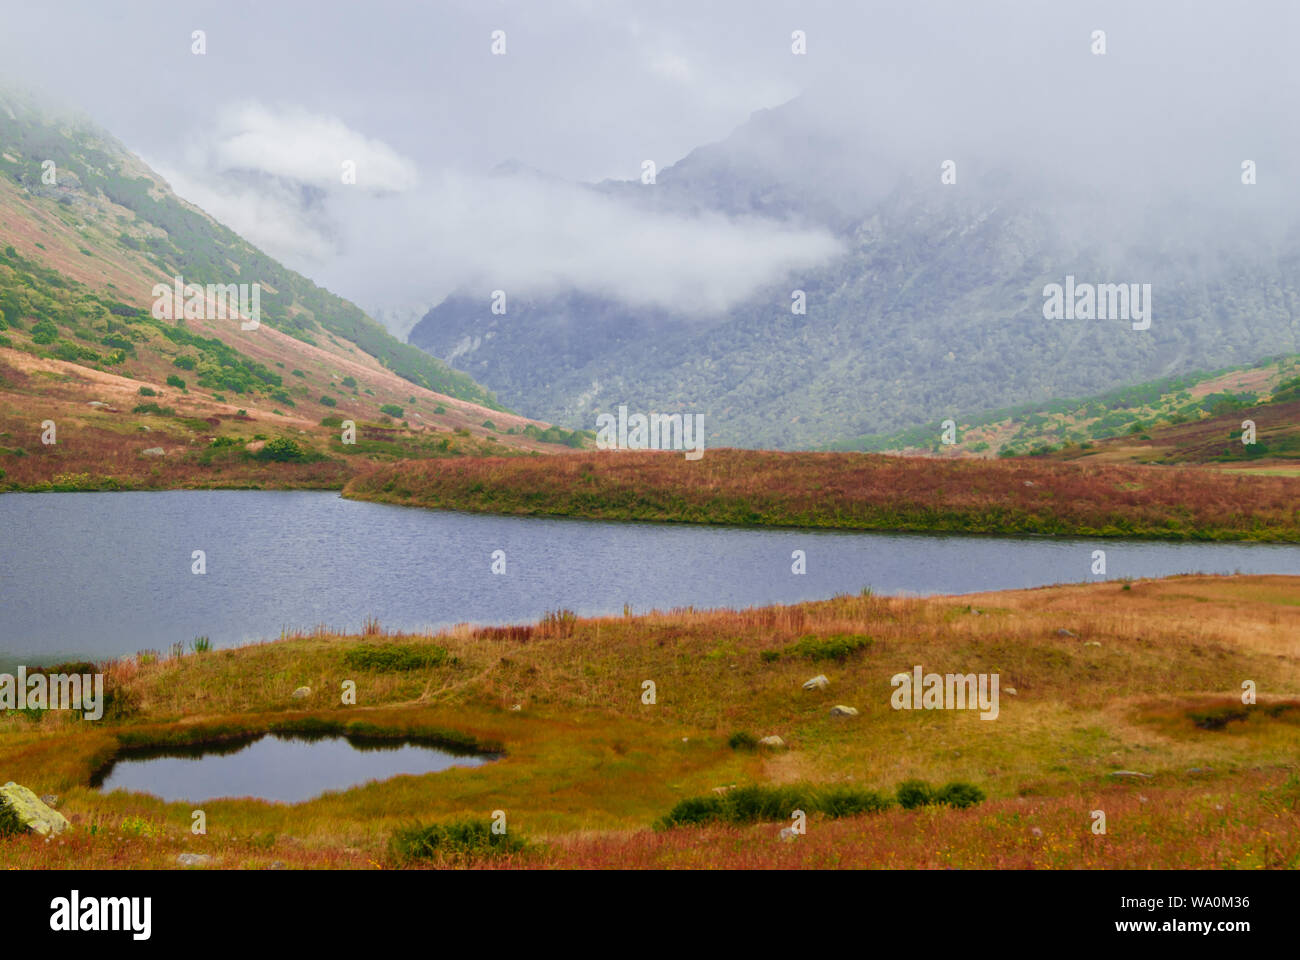 Misty mountain valley con lussureggiante vegetazione autunnale e due piccoli laghi, riparato da nuvole basse Foto Stock